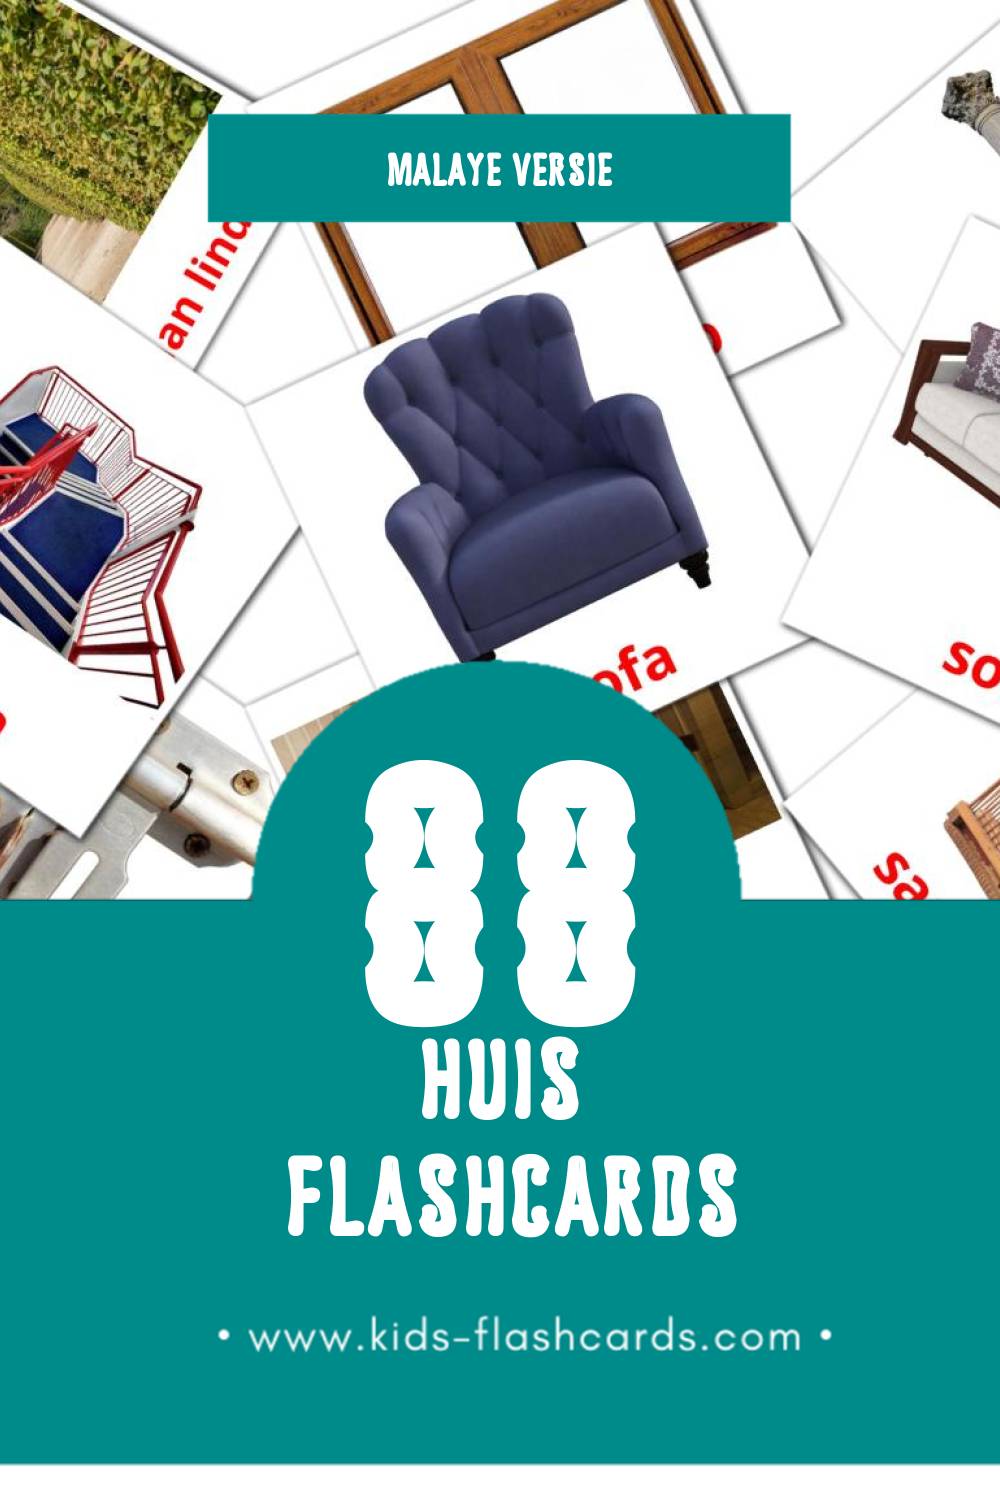 Visuele Rumah Flashcards voor Kleuters (88 kaarten in het Malay)